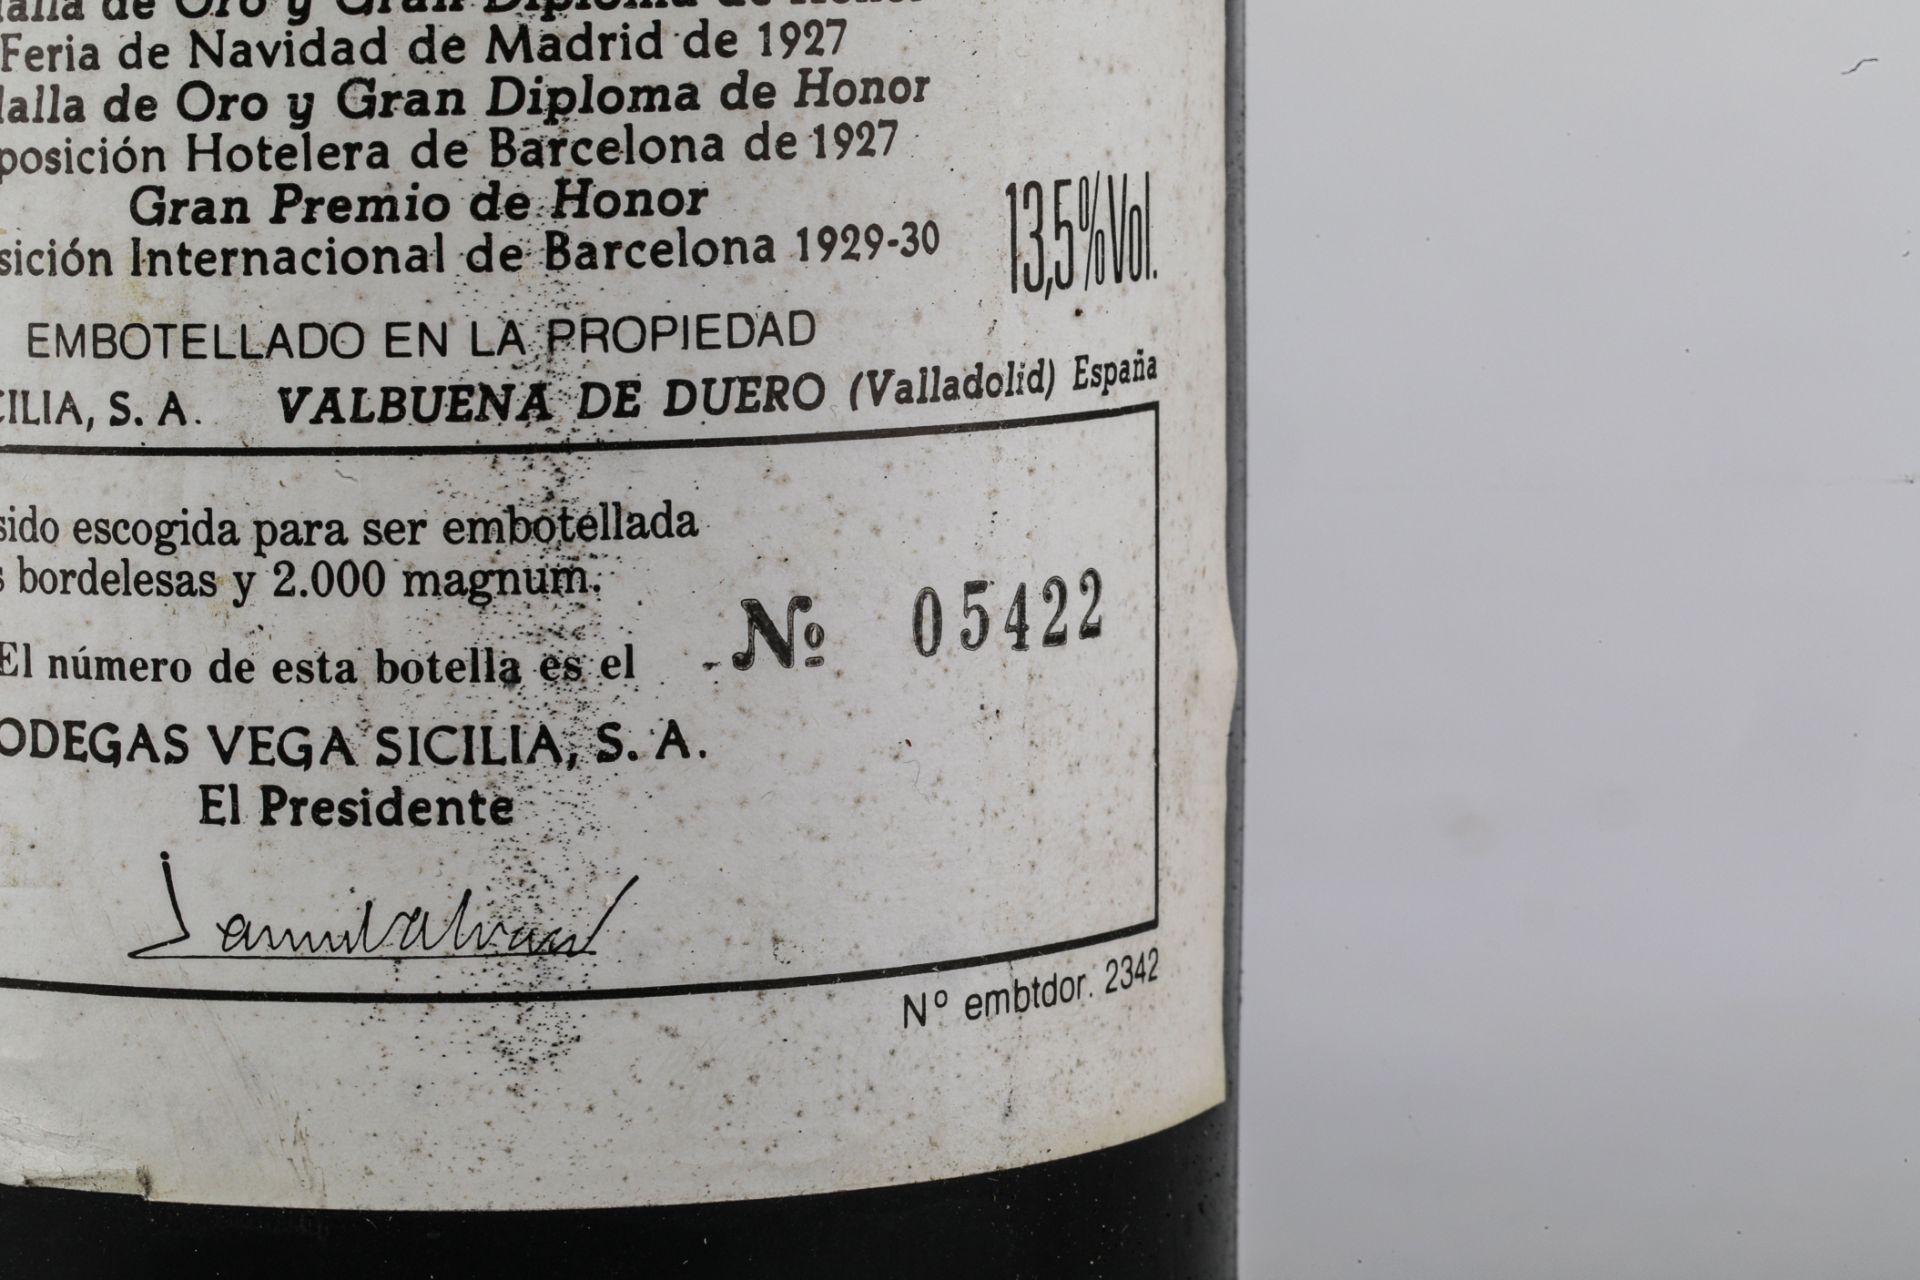 VEGA SICILIA UNICO. 1975.Ribera del Duero. Bouteille N°05422 sur production de 44 750 bouteilles. - Image 4 of 6